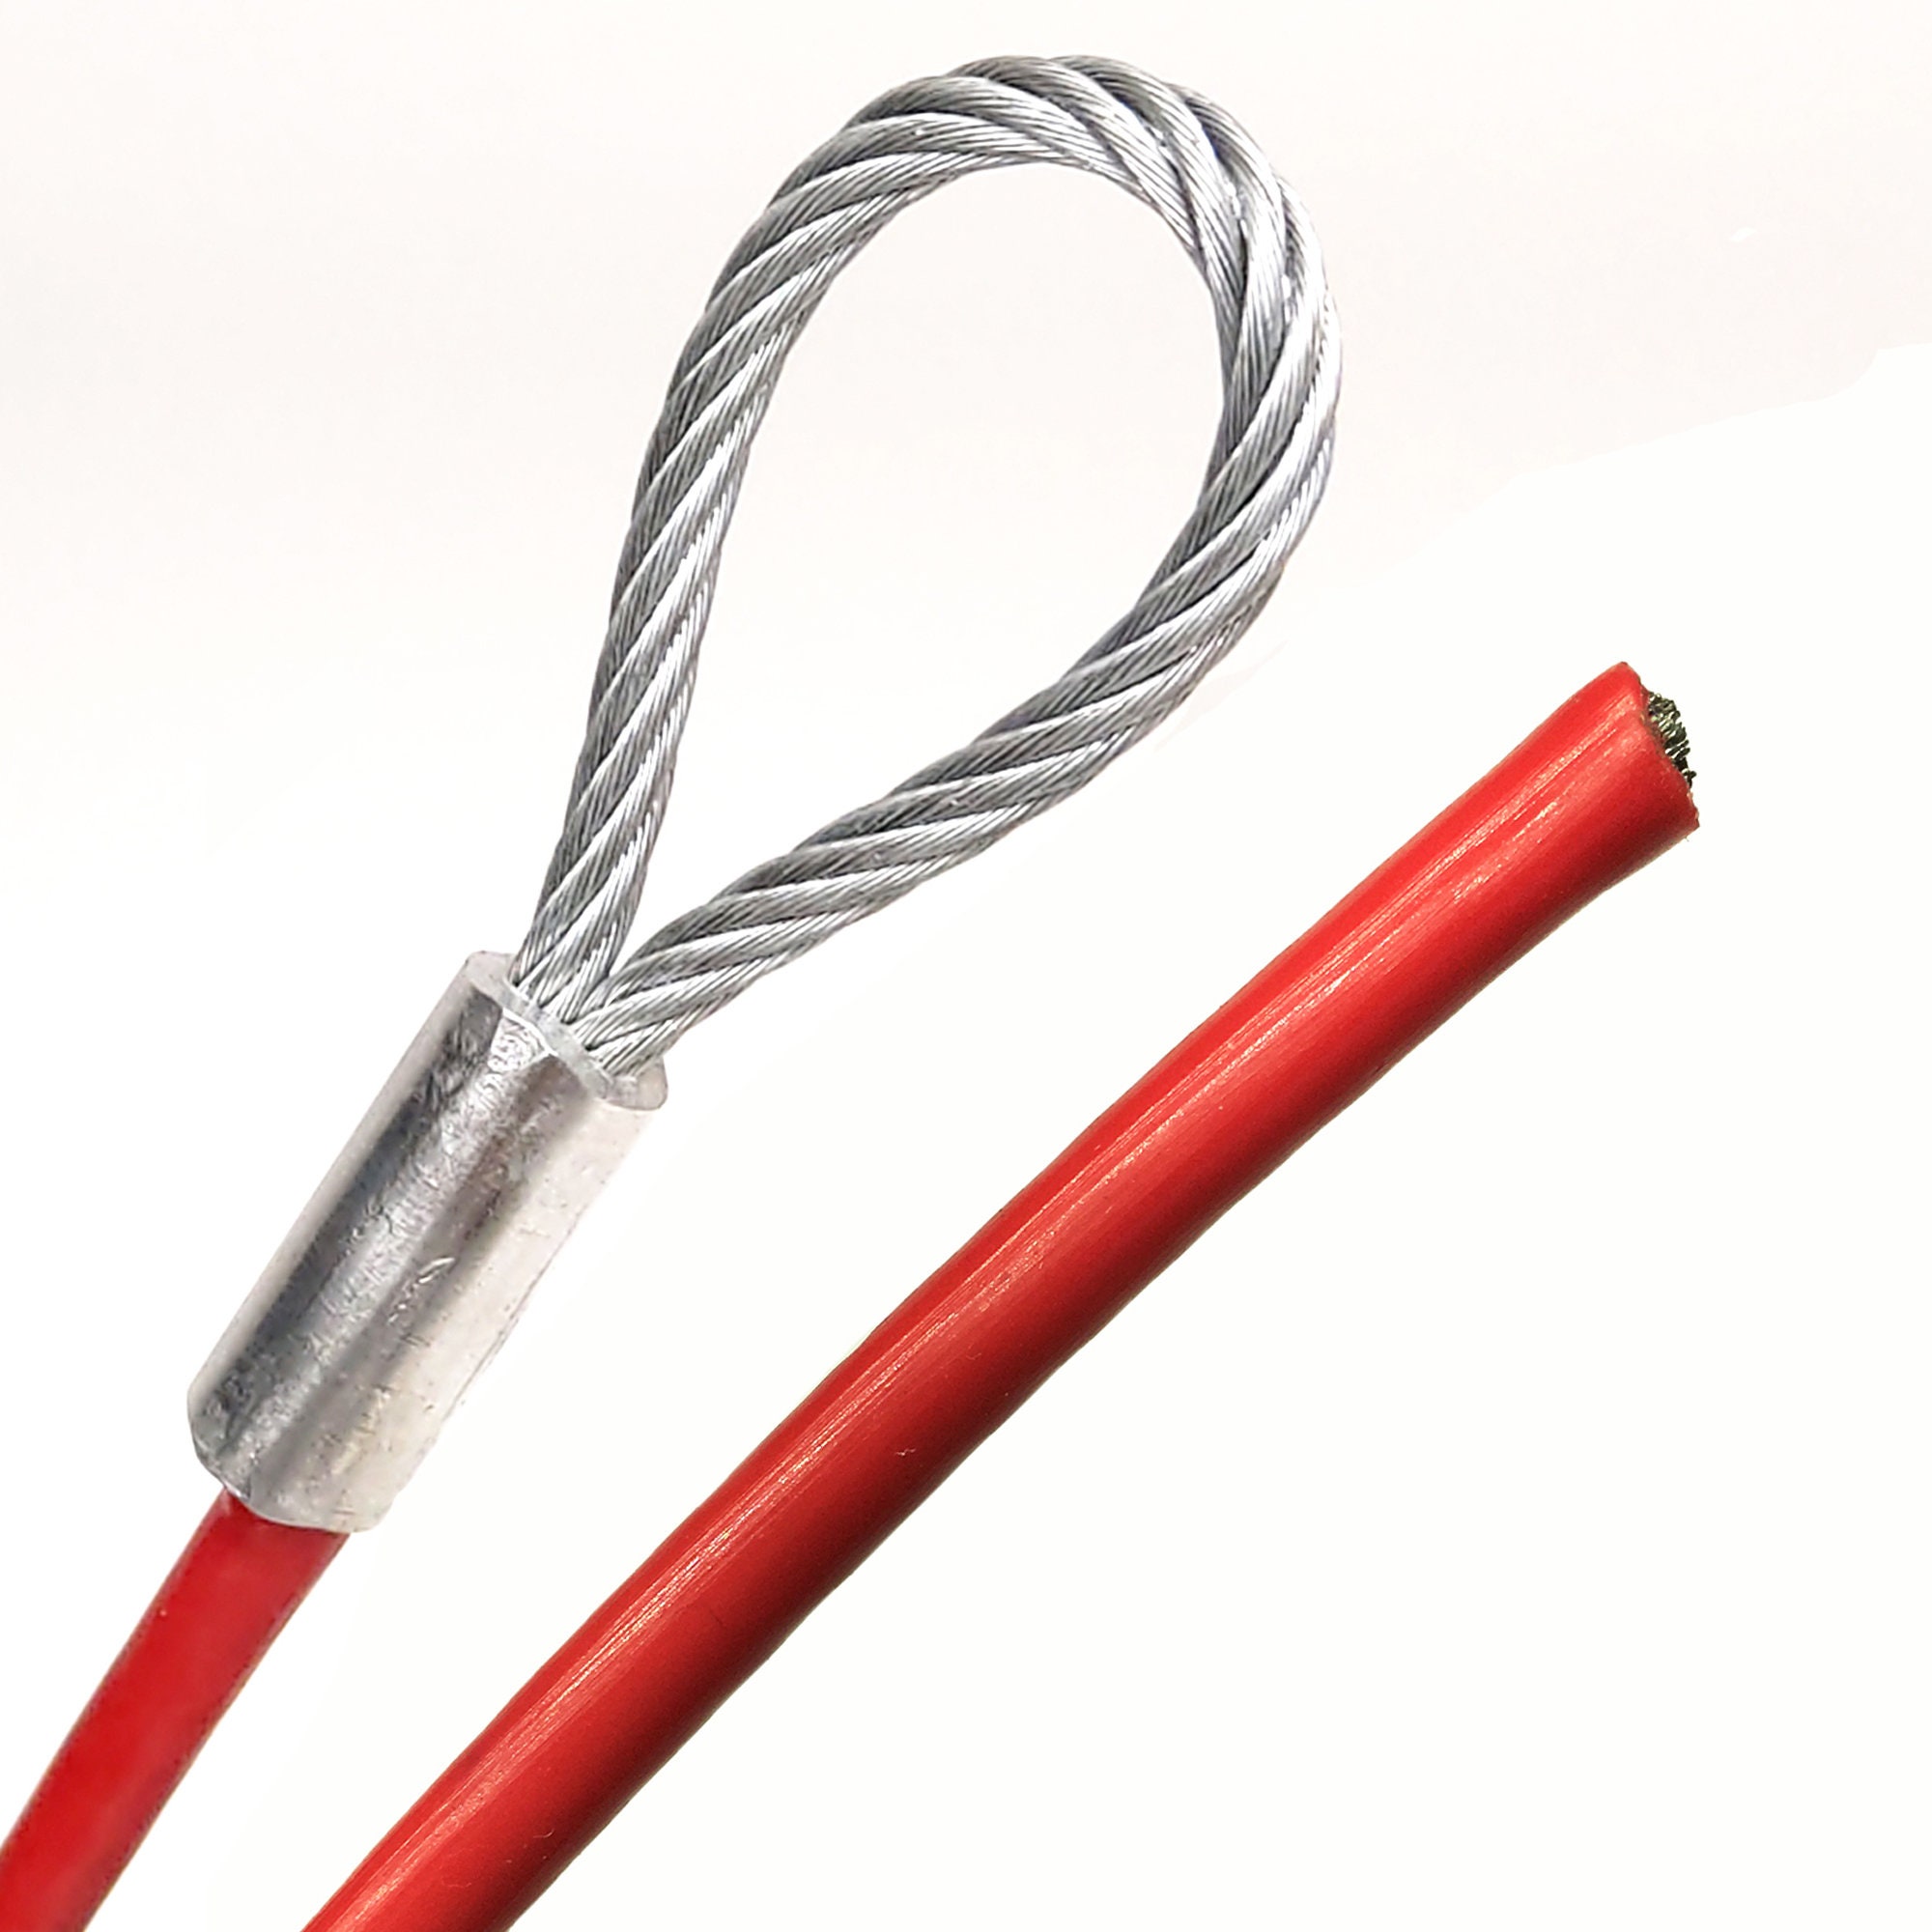  Cable de acero galvanizado, revestimiento de vinilo de 3/16  (negro, blanco, rojo, transparente y negro óxido), 7 x 19 hebras de núcleo  de 1/8, cable de seguridad flexible multiusos, de 1